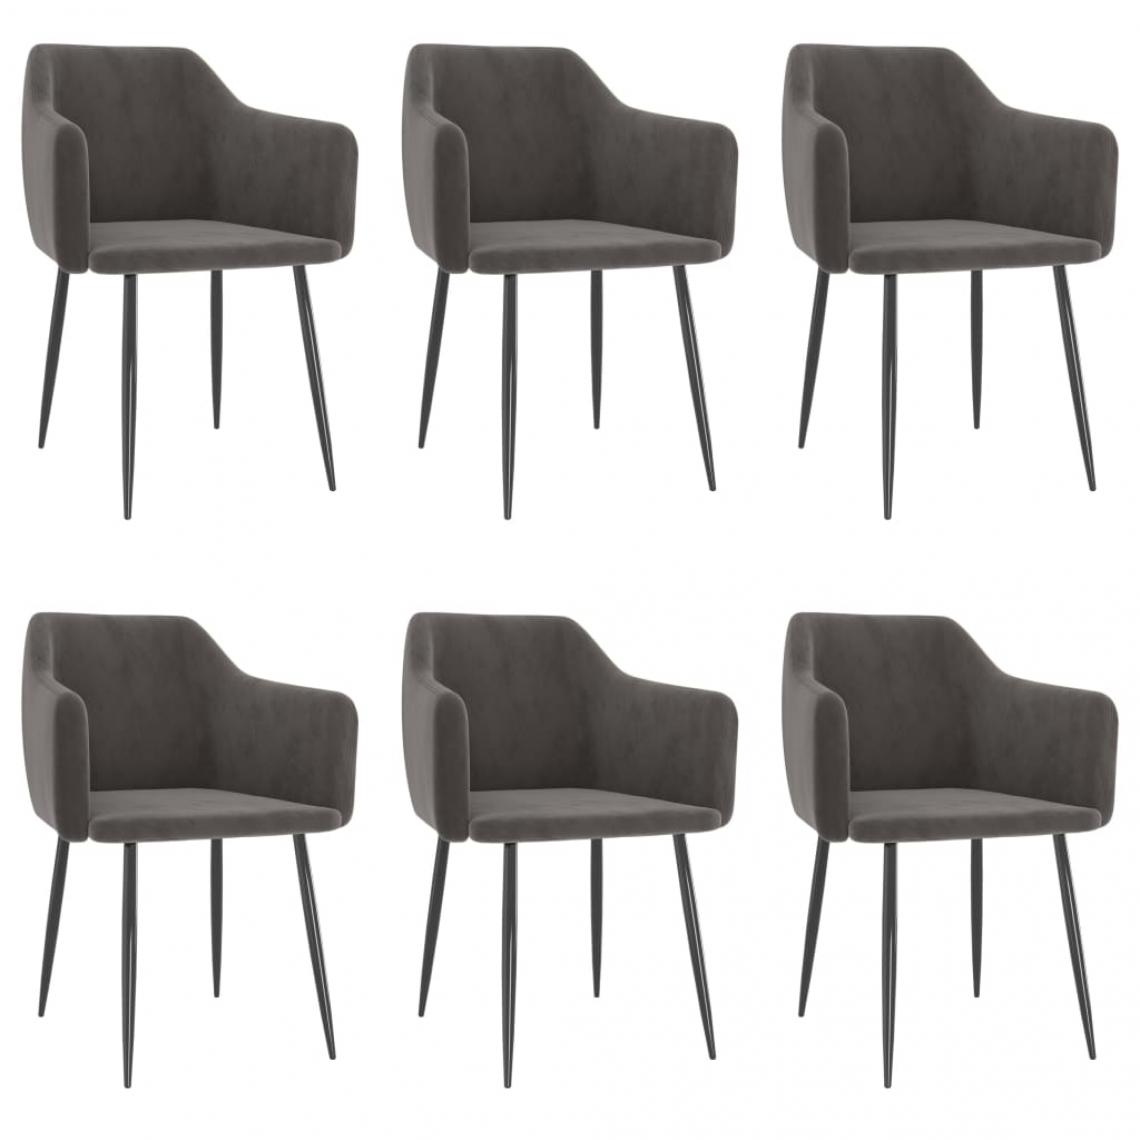 Decoshop26 - Lot de 6 chaises de salle à manger cuisine design moderne velours gris foncé CDS022468 - Chaises